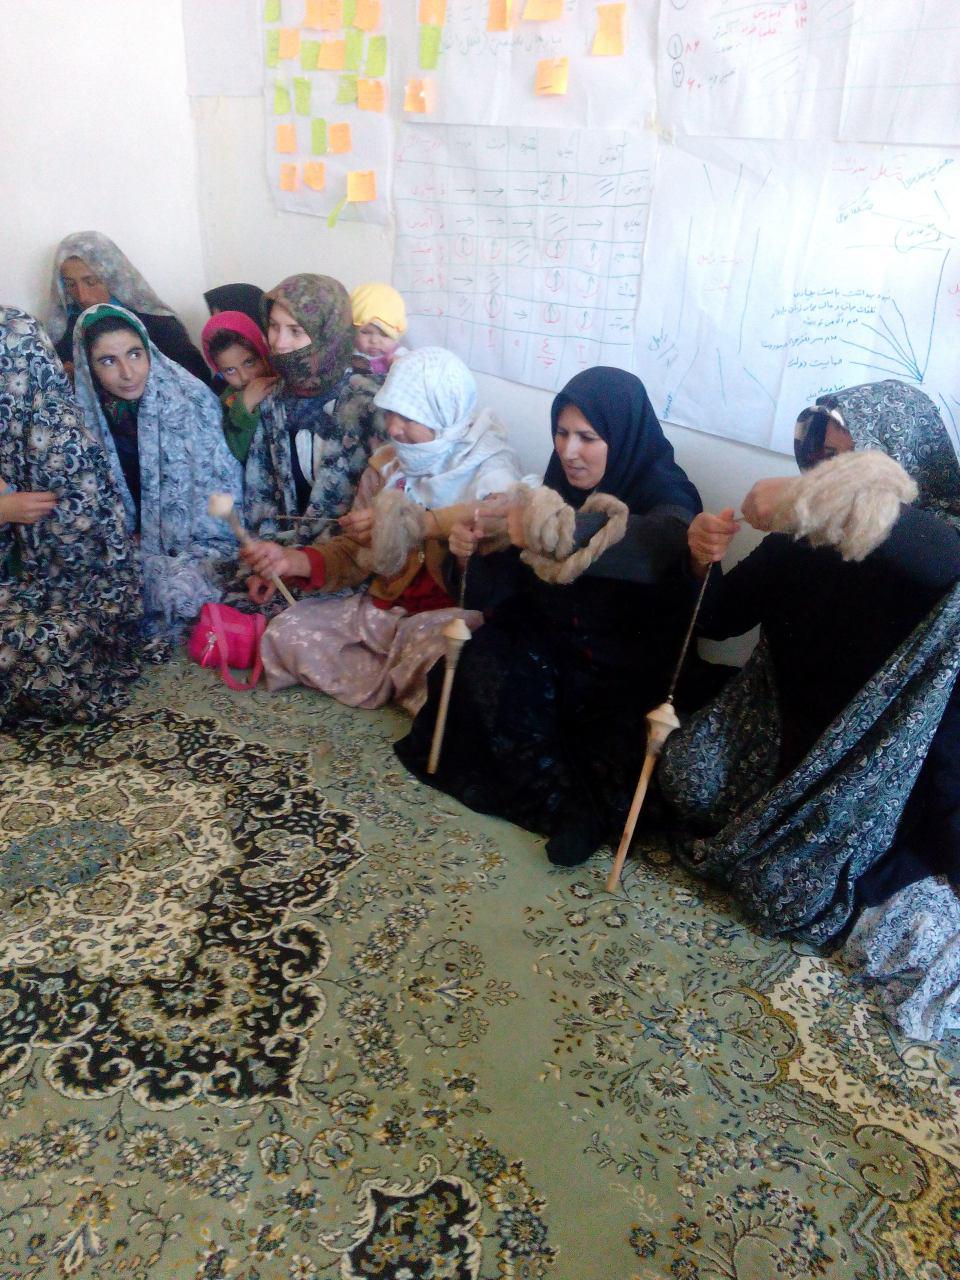 اجراي پروژه مناريد و تلاش زنان براي كسب درآمد در يك روستاي خراسان شمالي